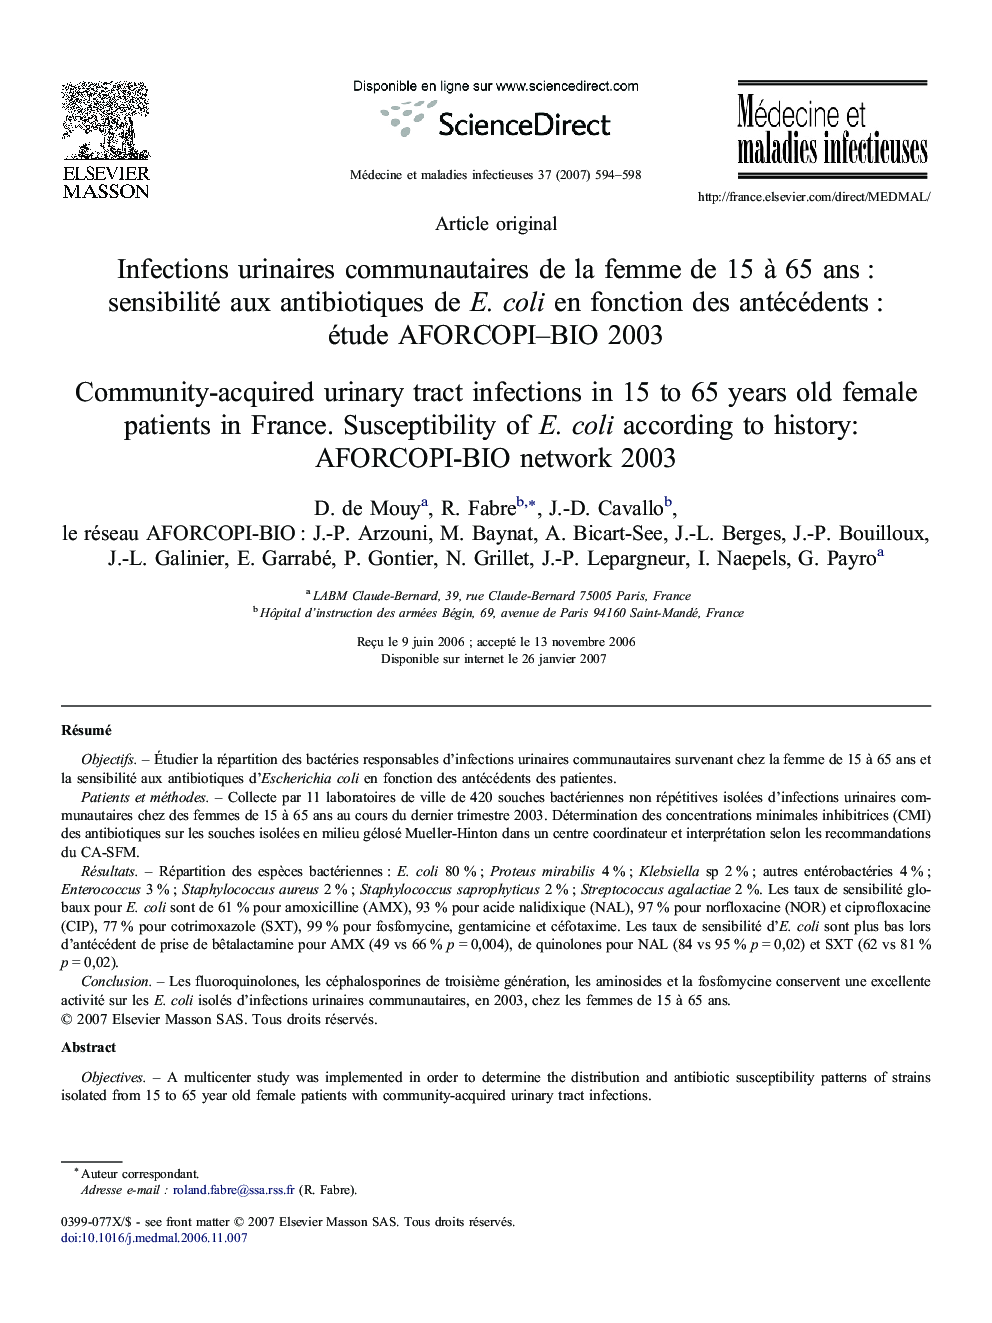 Infections urinaires communautaires de la femme de 15 à 65 ans : sensibilité aux antibiotiques de E. coli en fonction des antécédents : étude AFORCOPI–BIO 2003